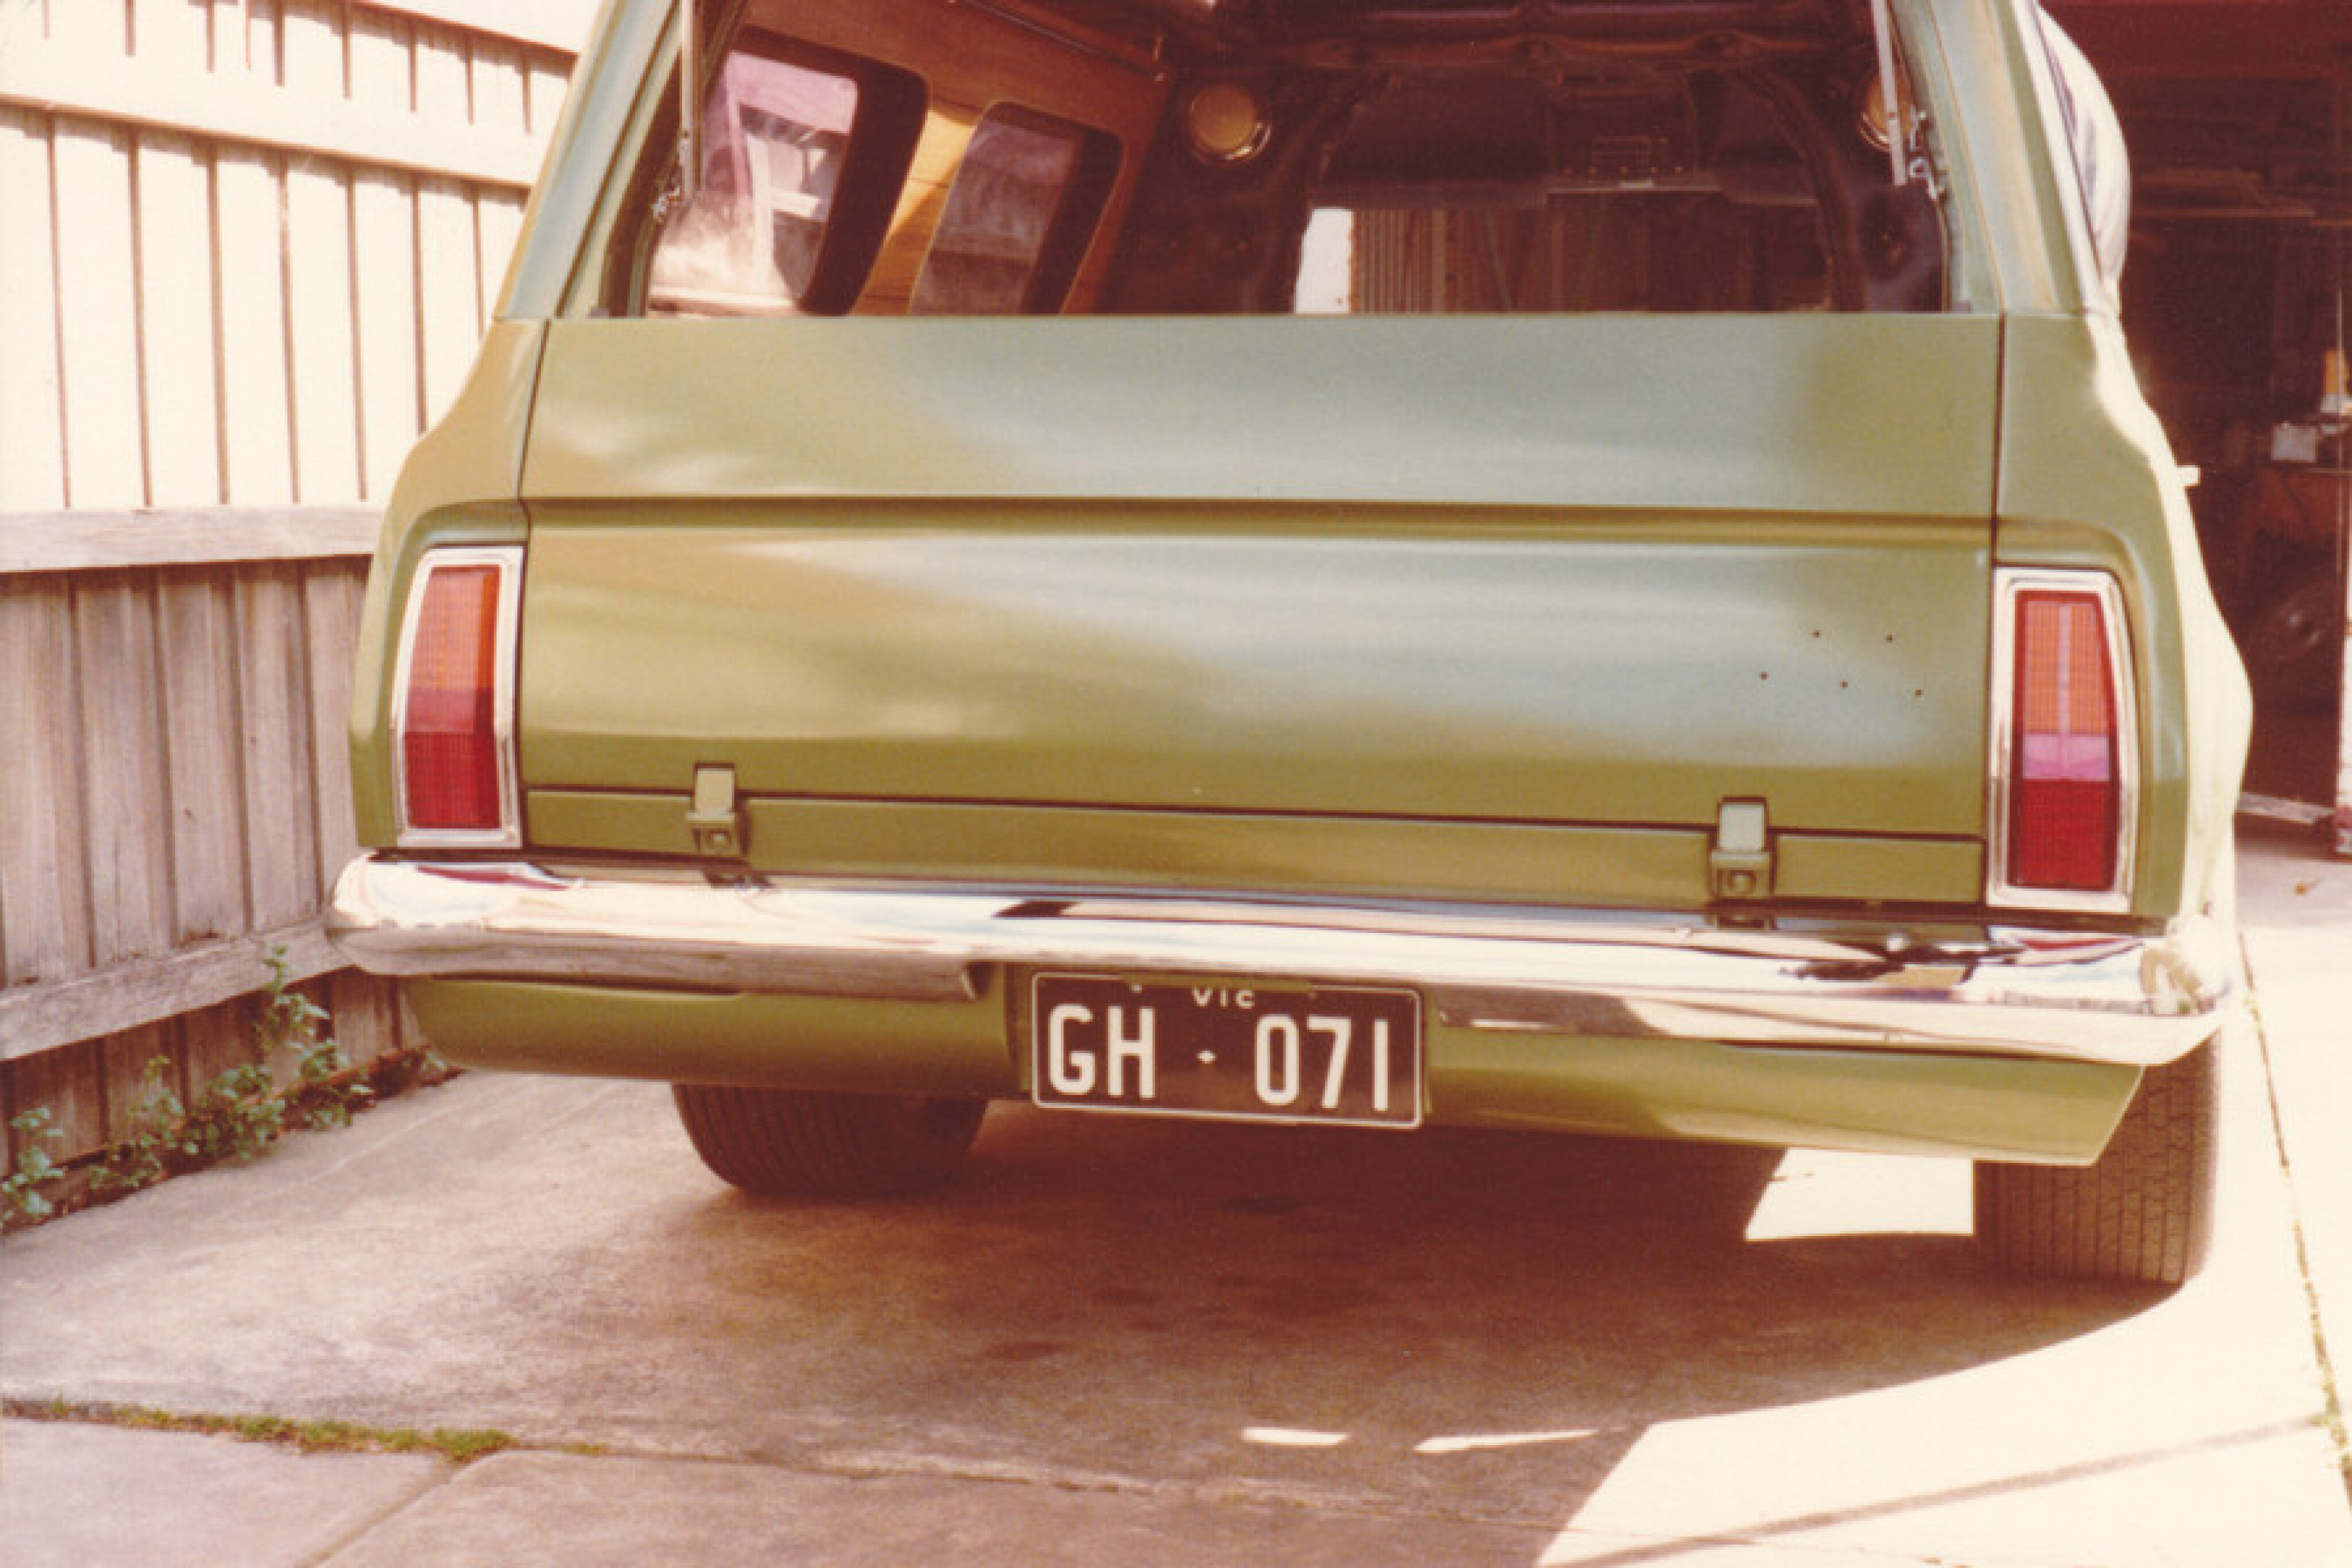 561d1382/green knight hg panelvan rear jpg